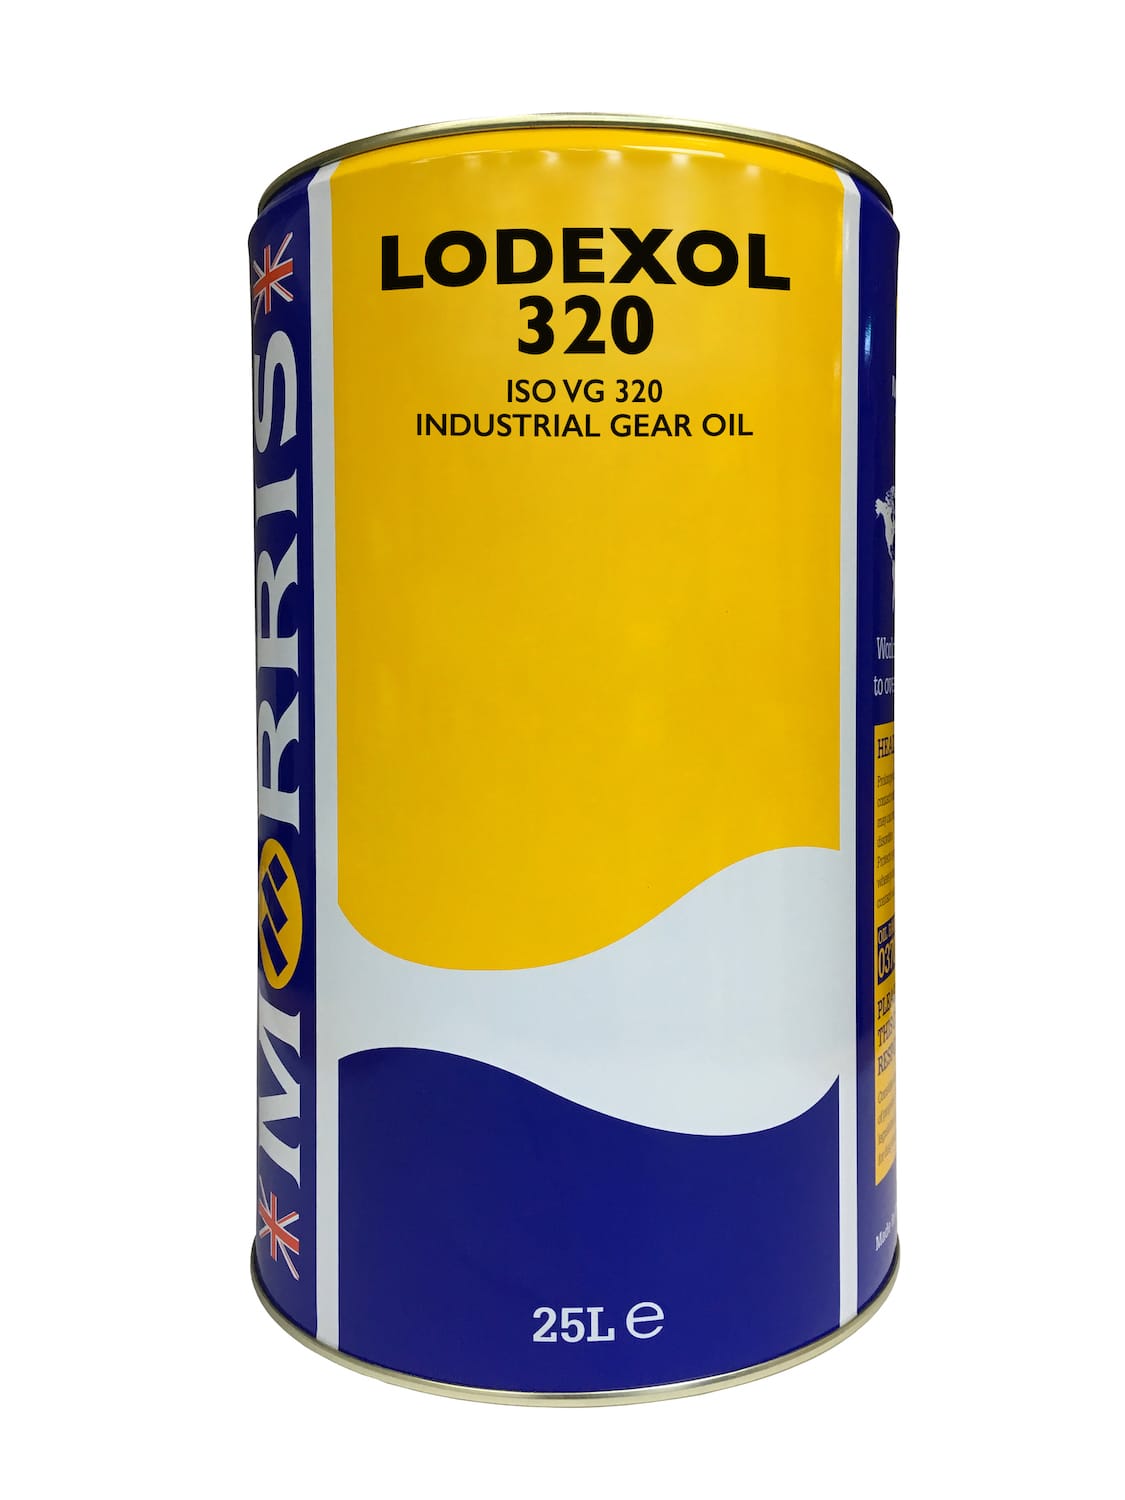 Lodexol 320